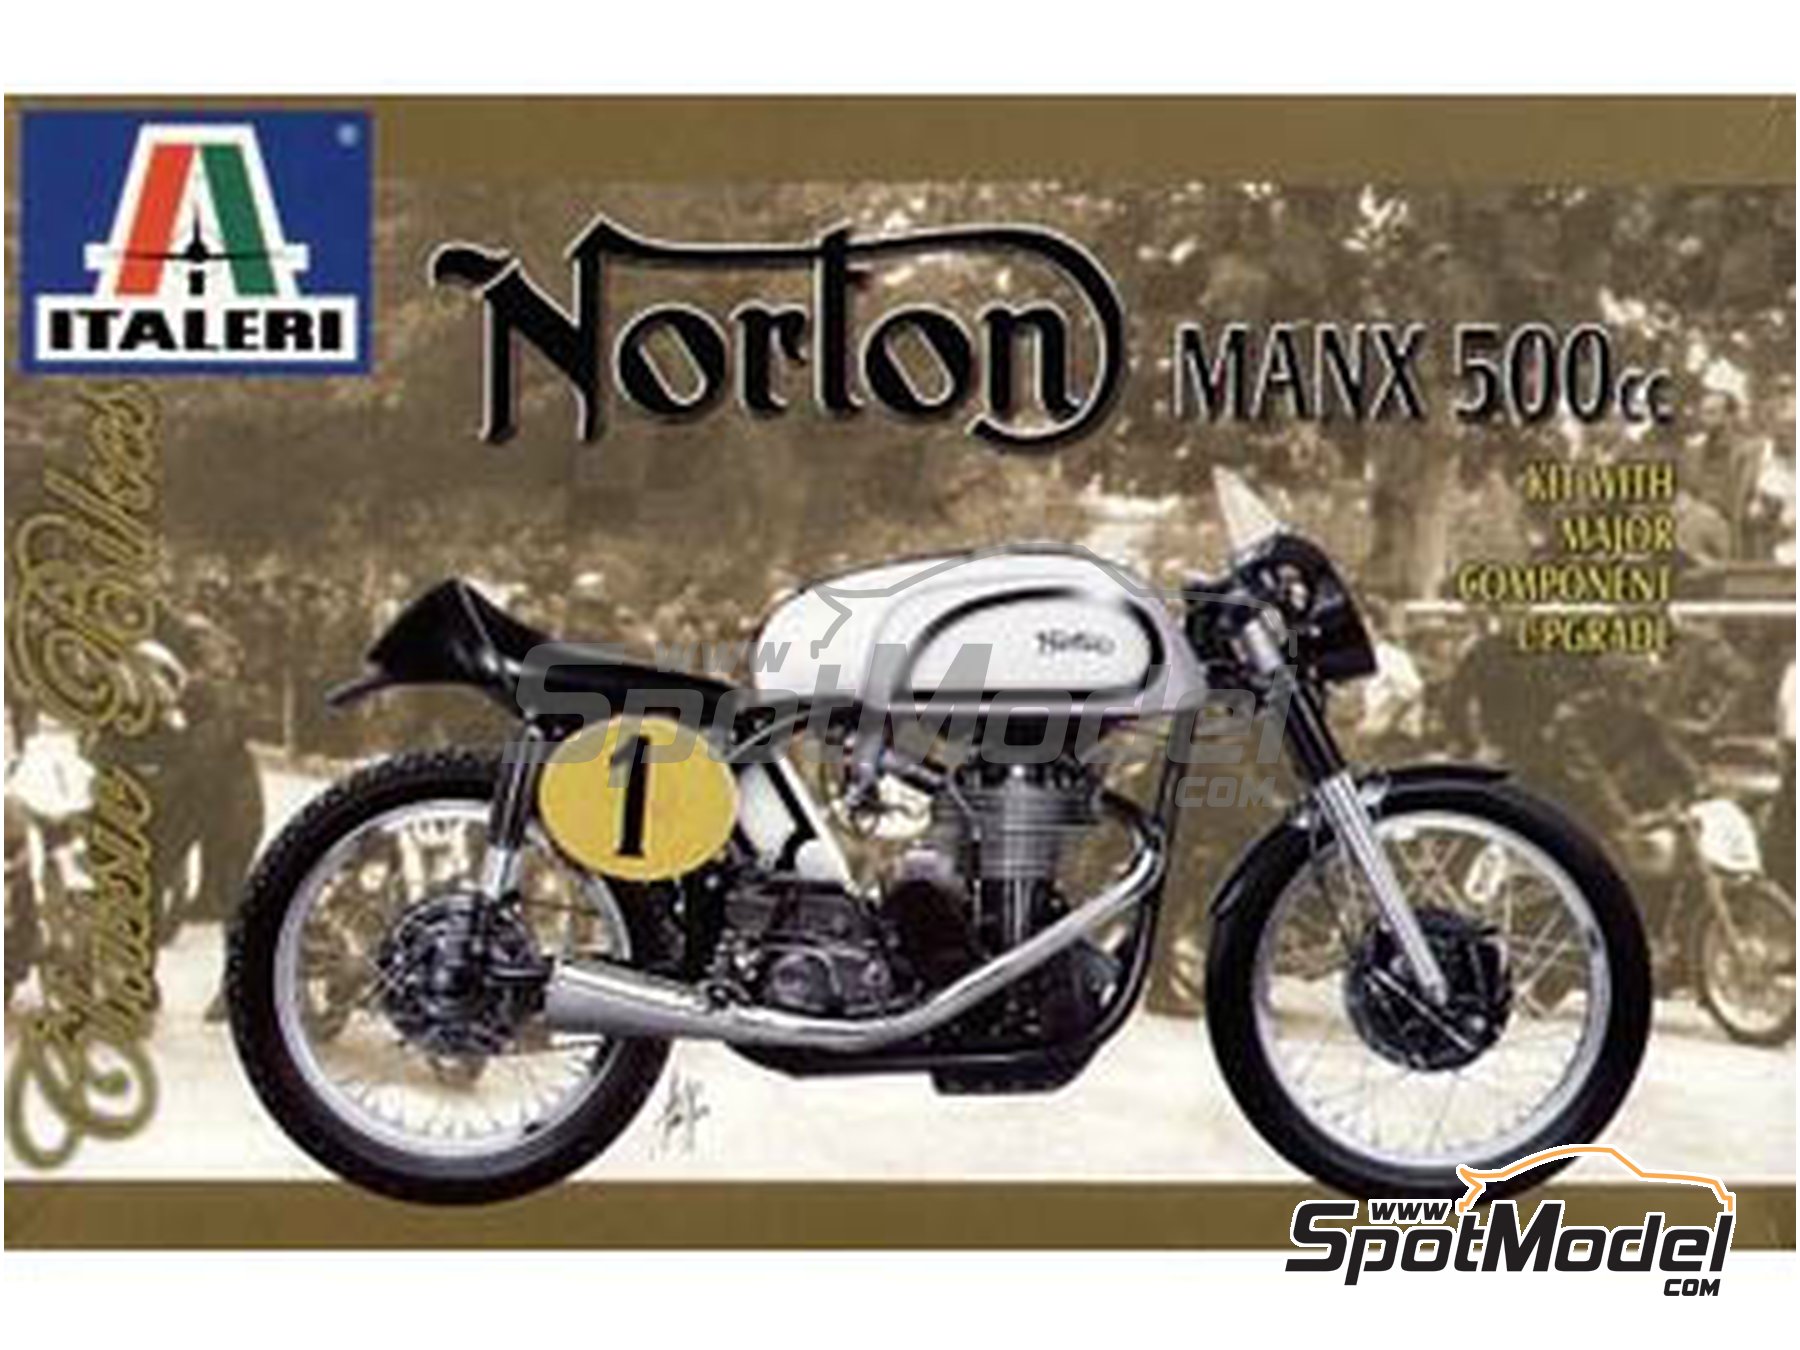 Italeri  1/9 1951 Norton Manx 500cc Motorcycle  ITA4602